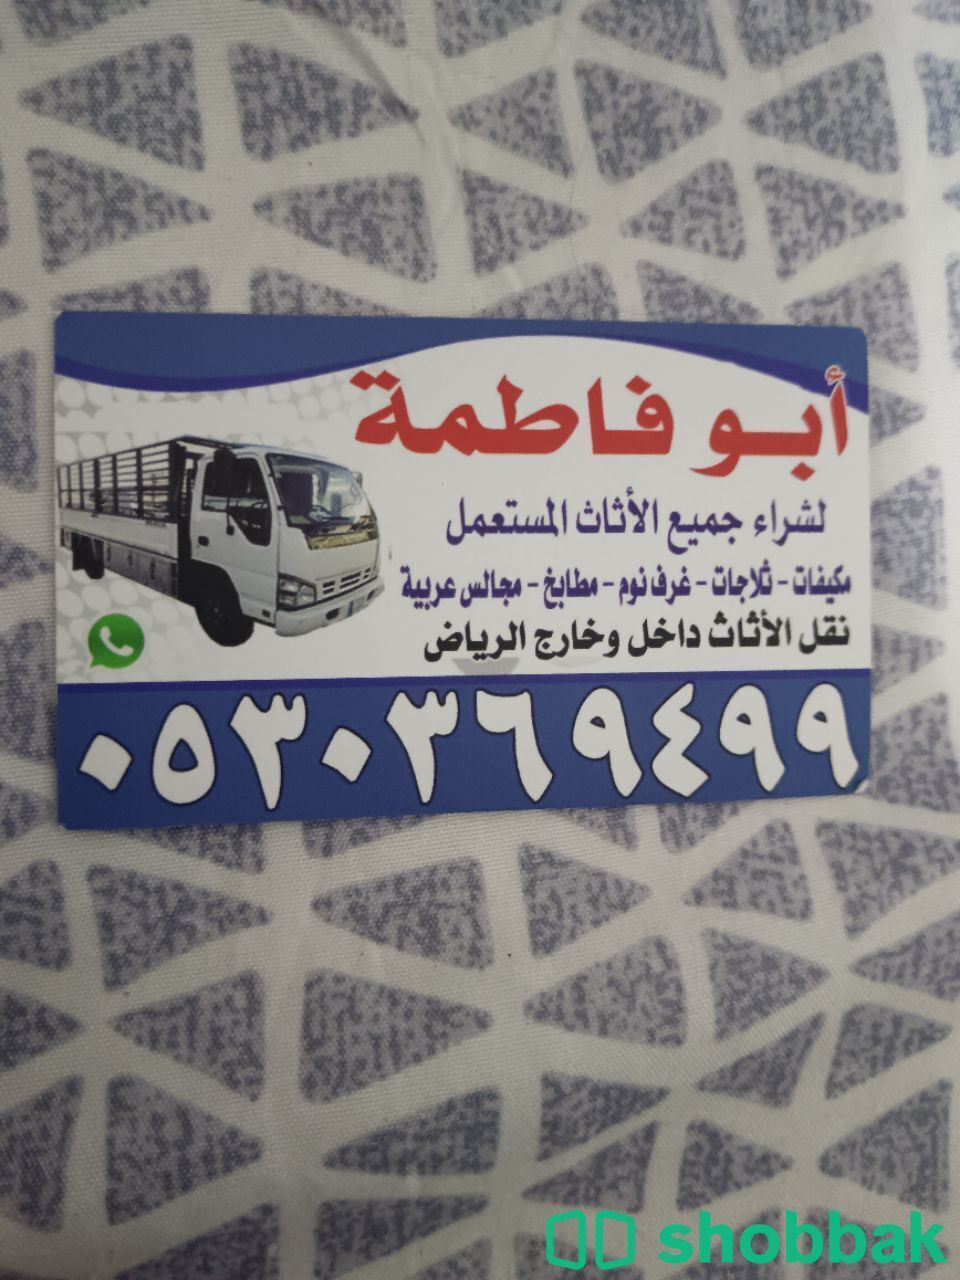 شراء أثاث مستعمل حي الصحافة 0530369499  Shobbak Saudi Arabia